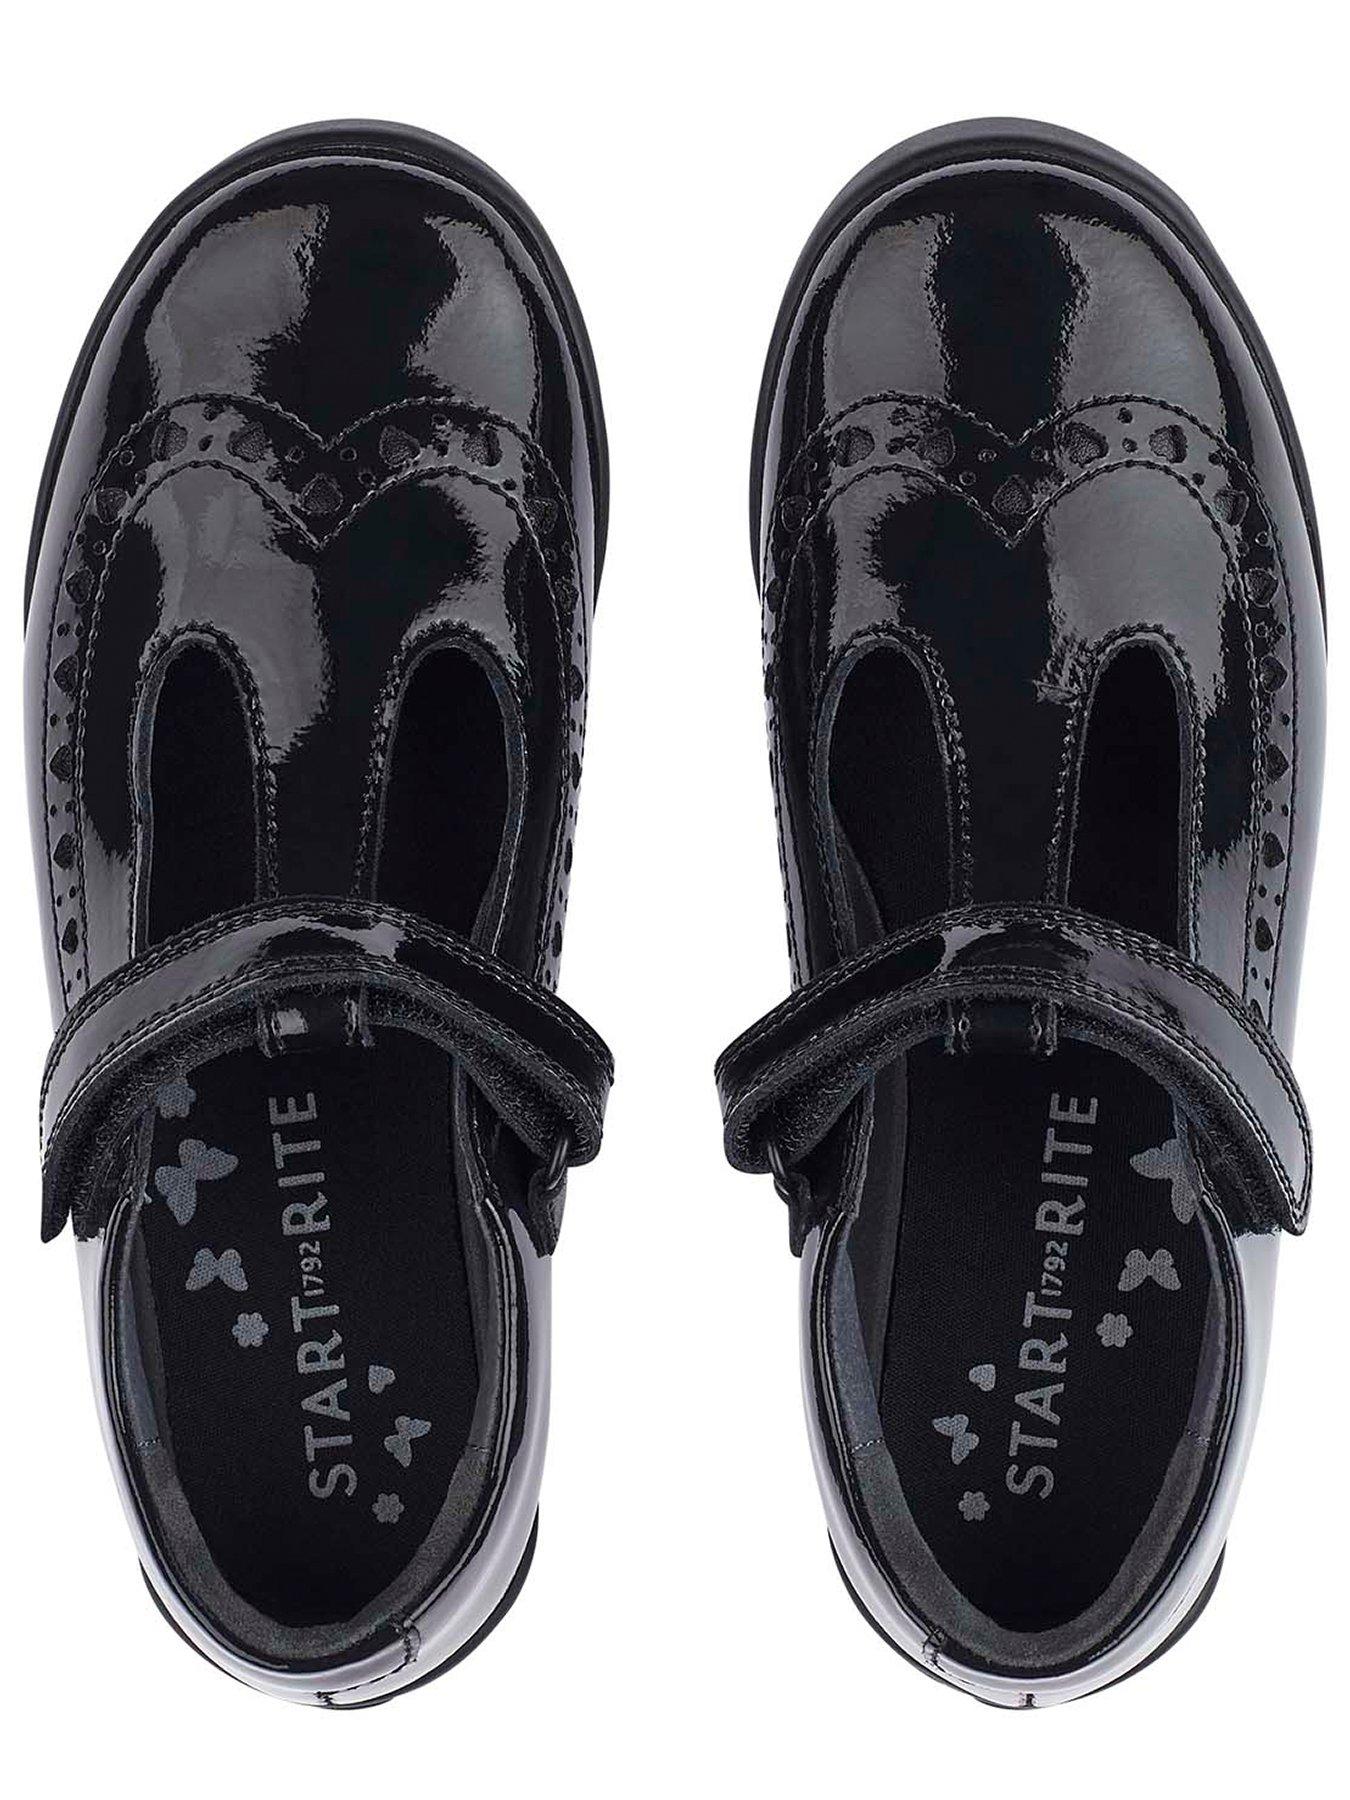  Girls Leapfrog T-Bar School Shoes - Black